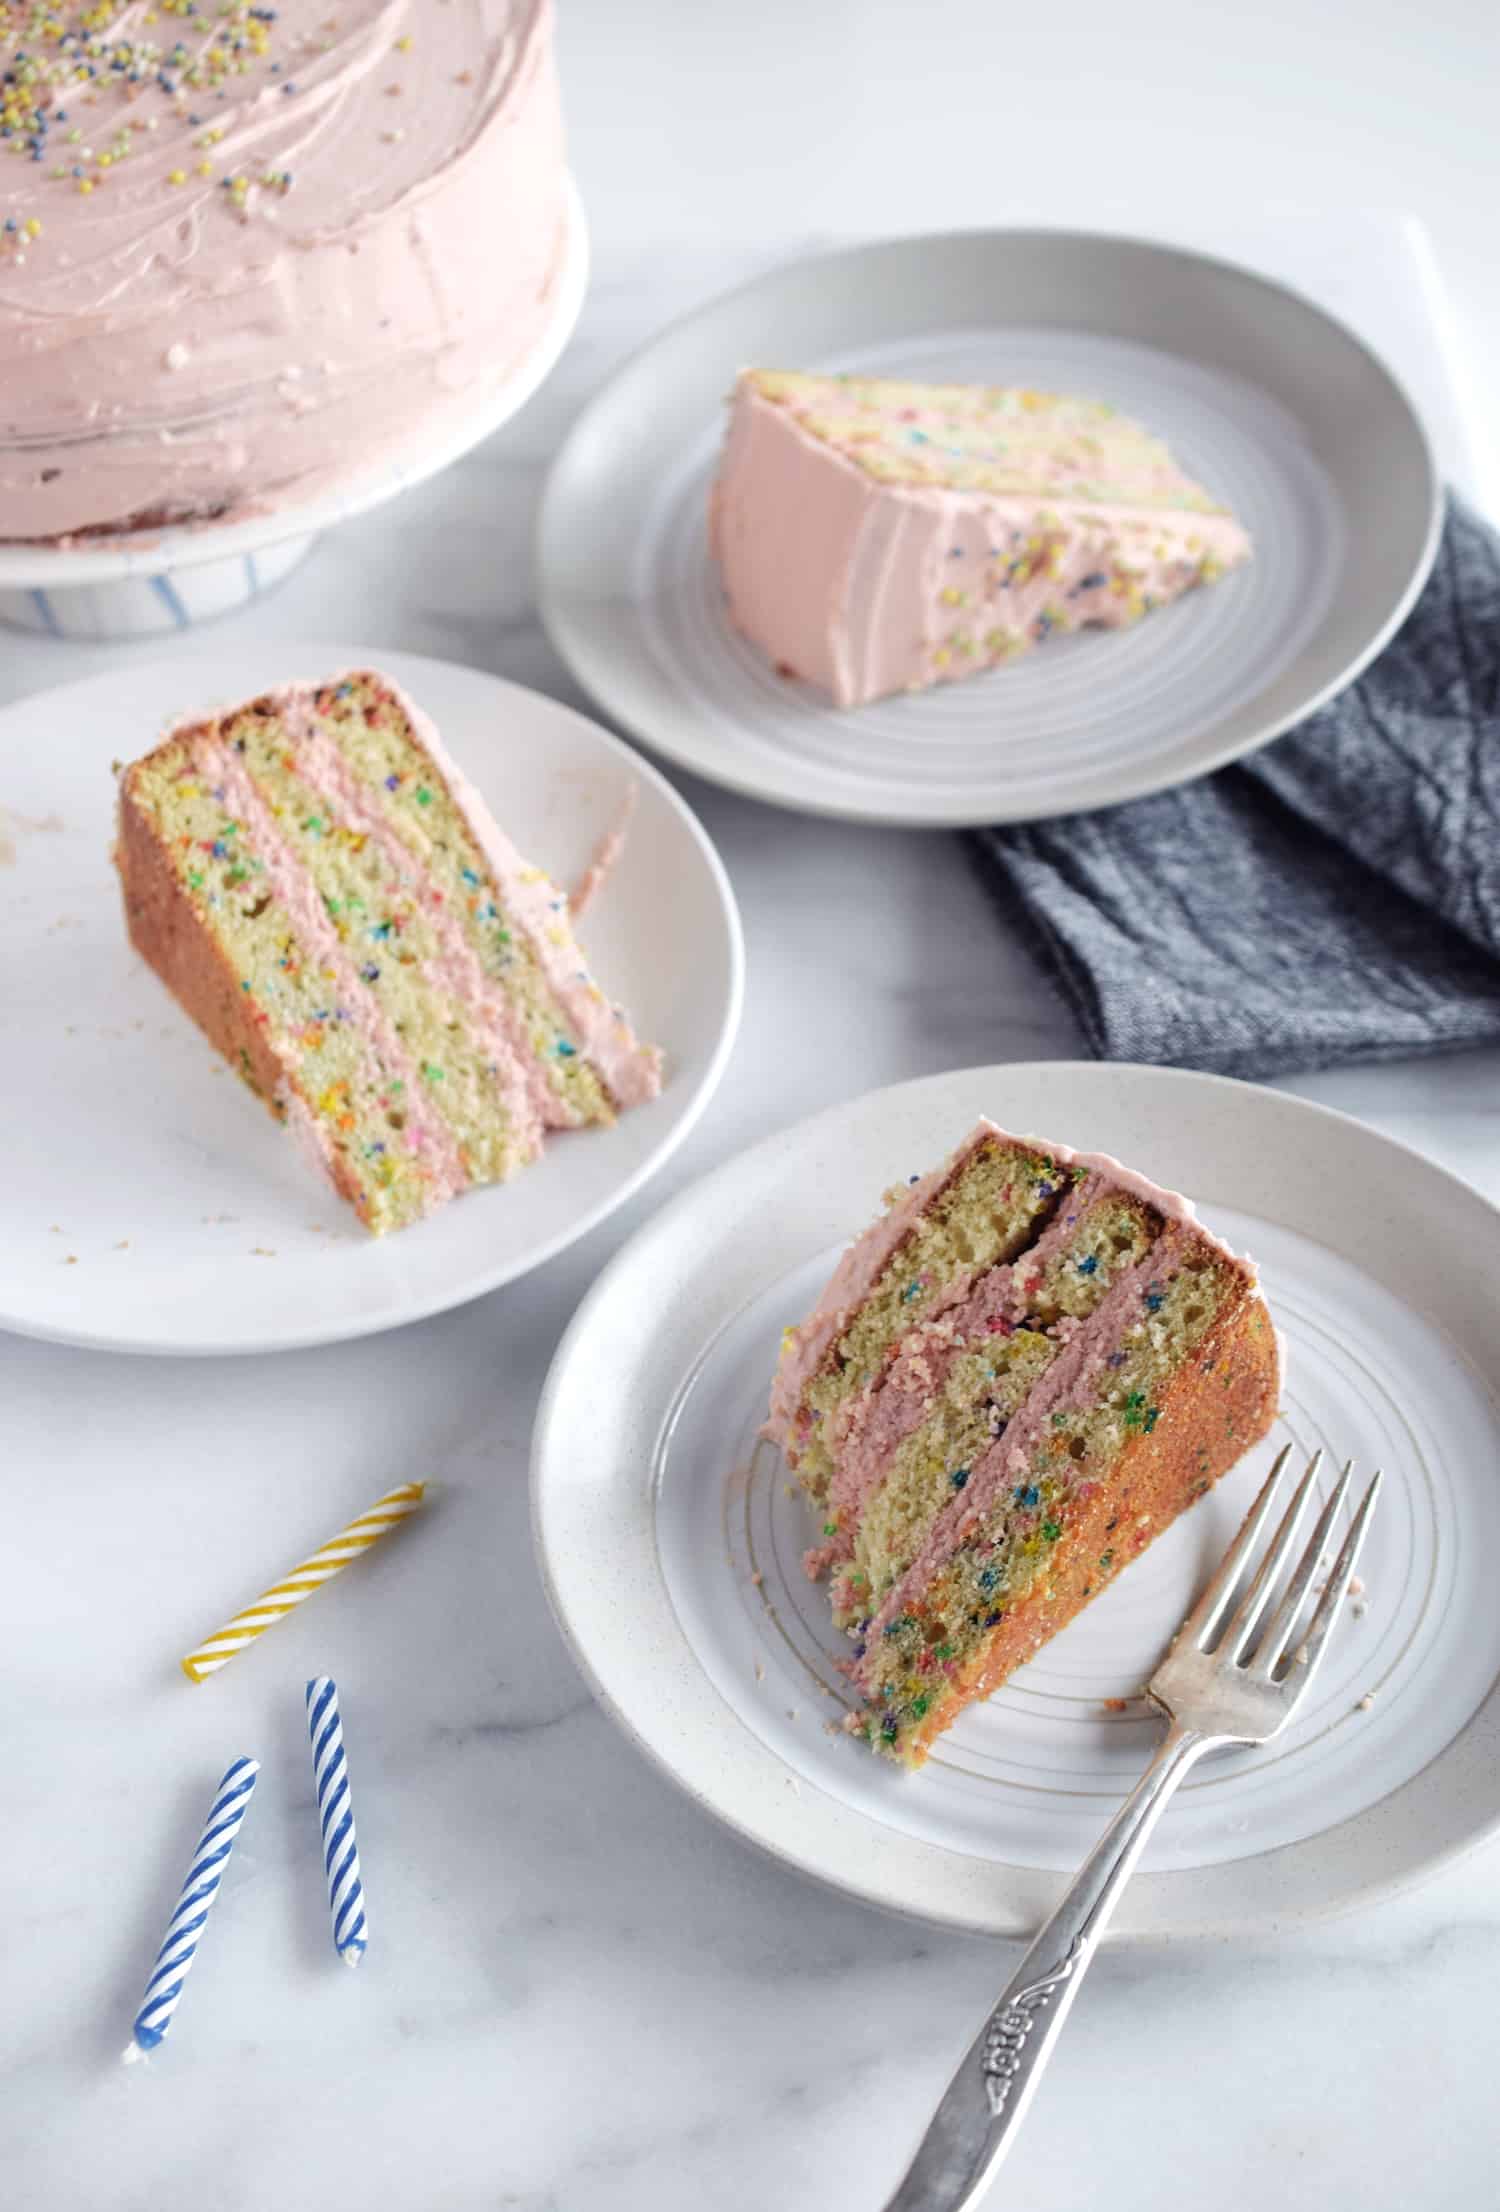 Rainbow Sprinkle Cake - The Baking ChocolaTess